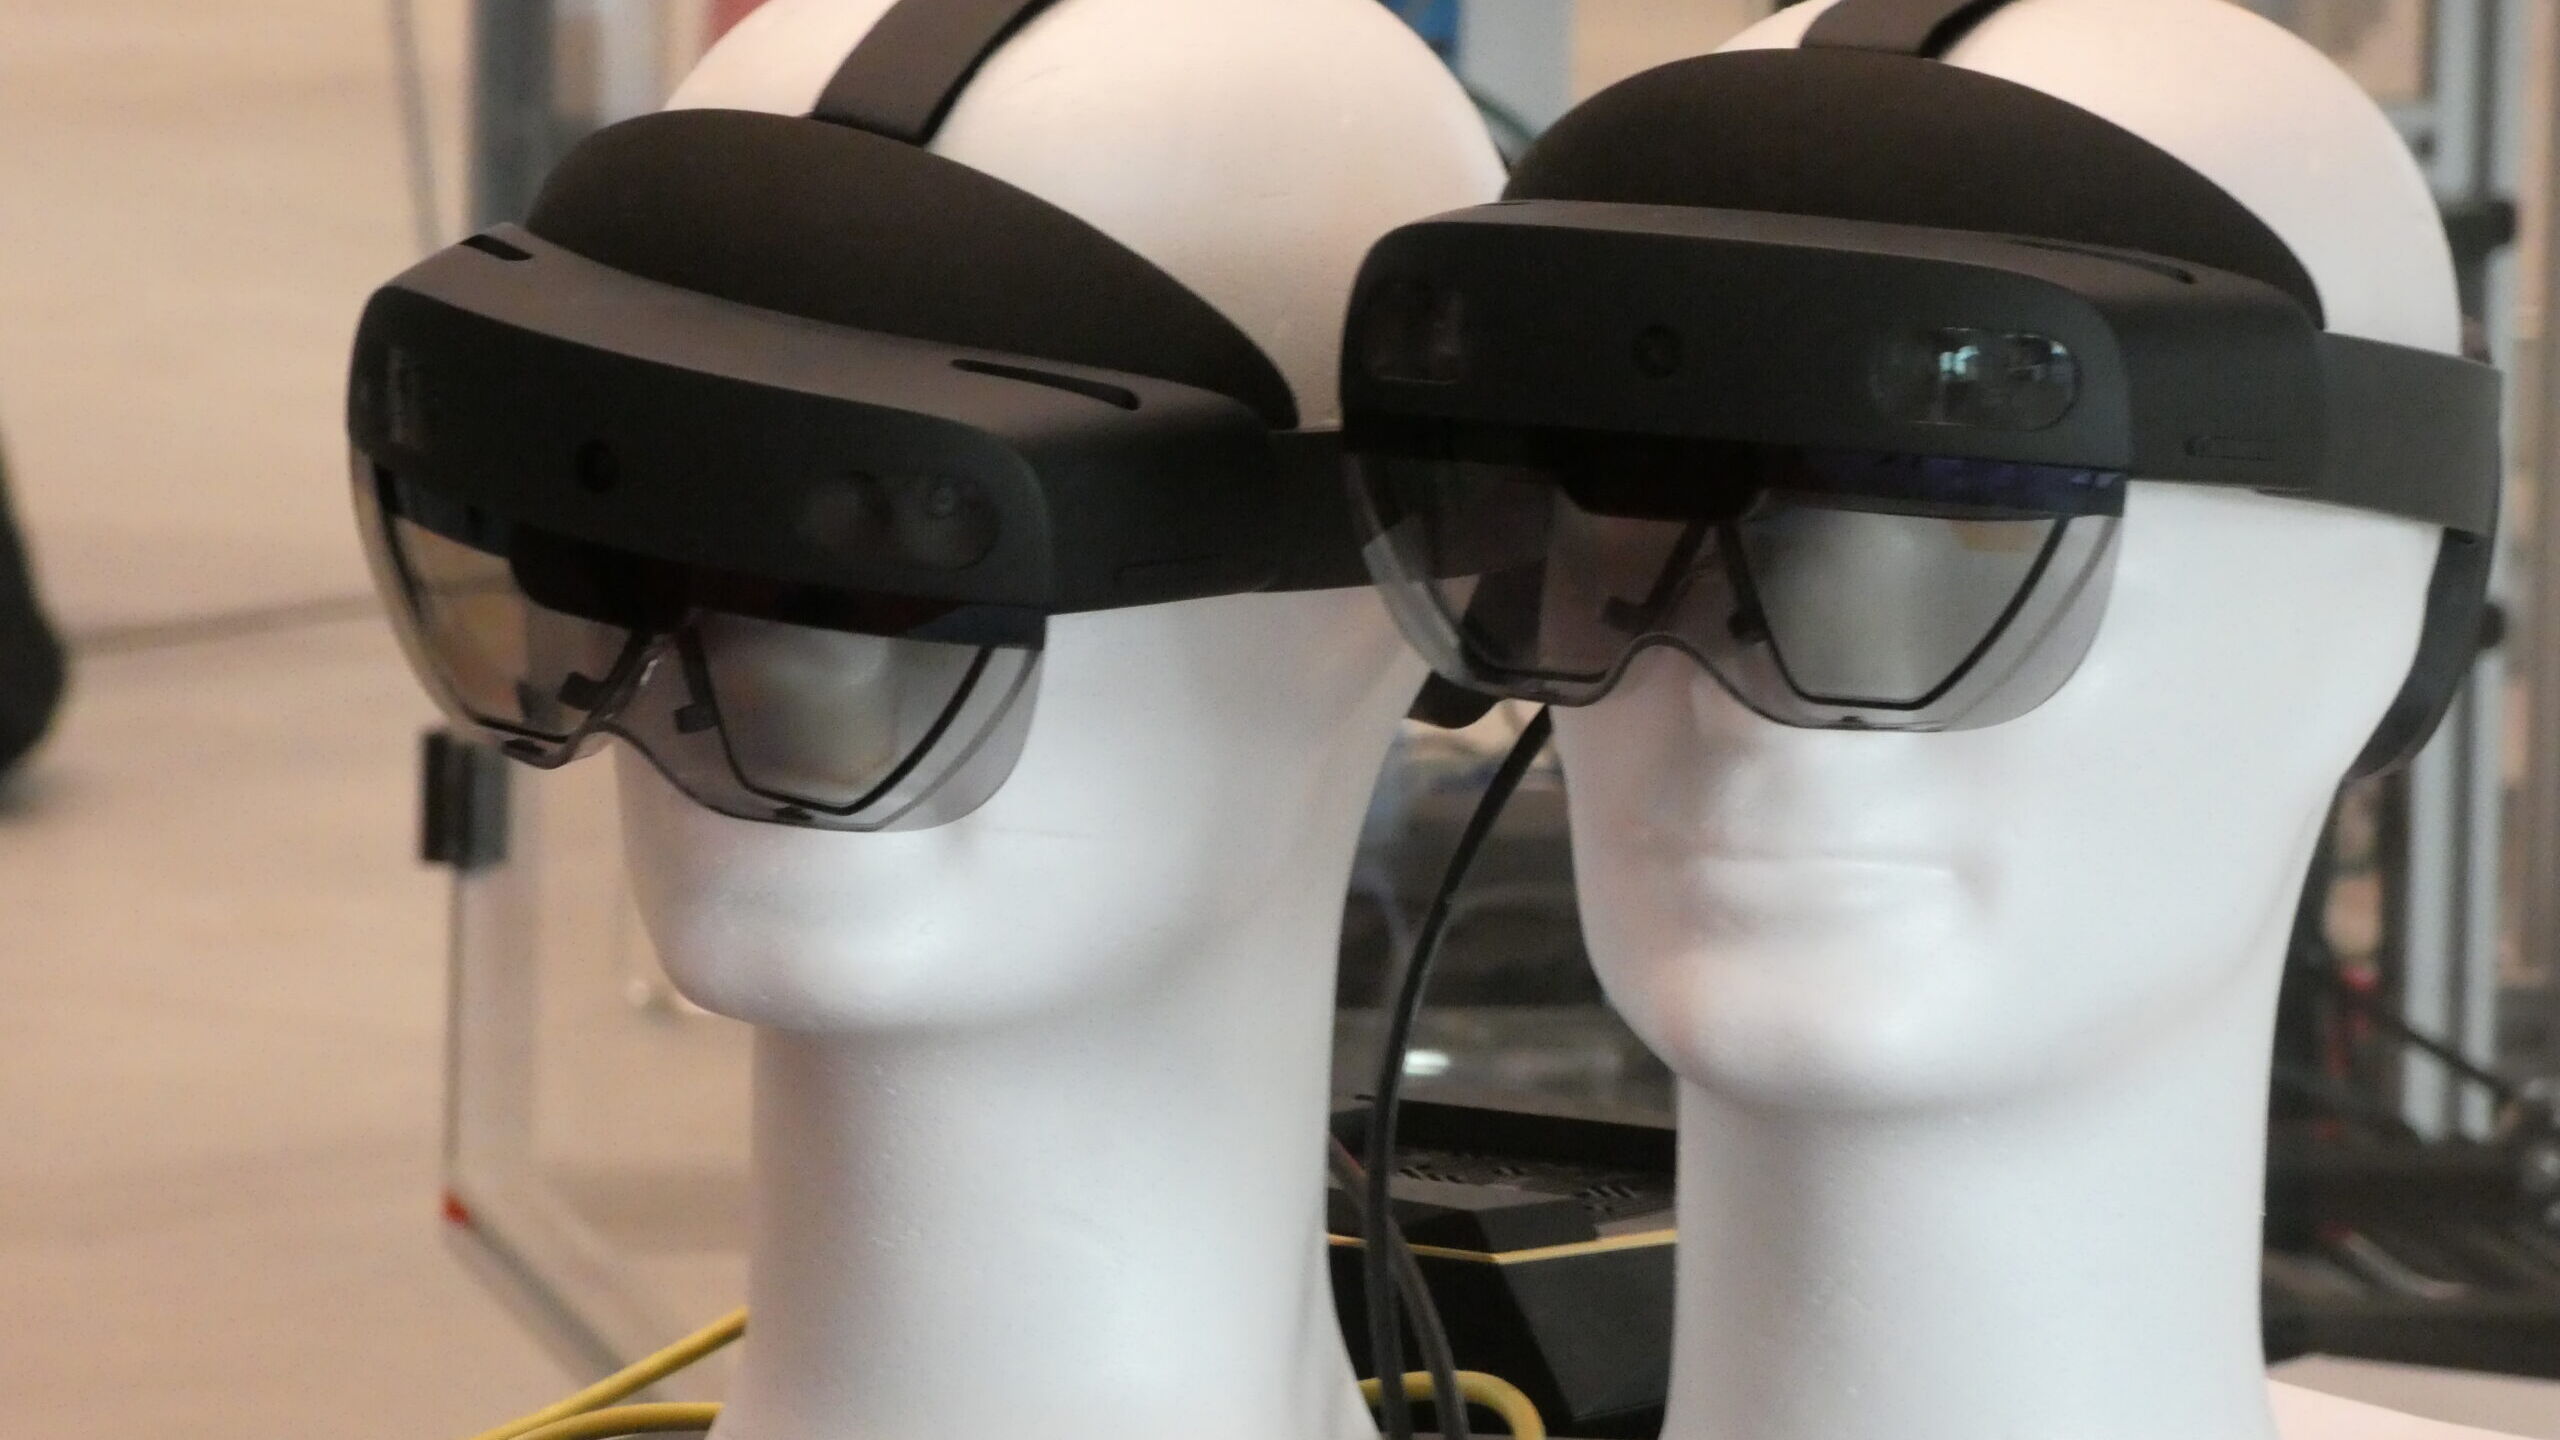 Visori per l'utilizzo della realtà aumentata all'Innovation Park di Biel/Bienne